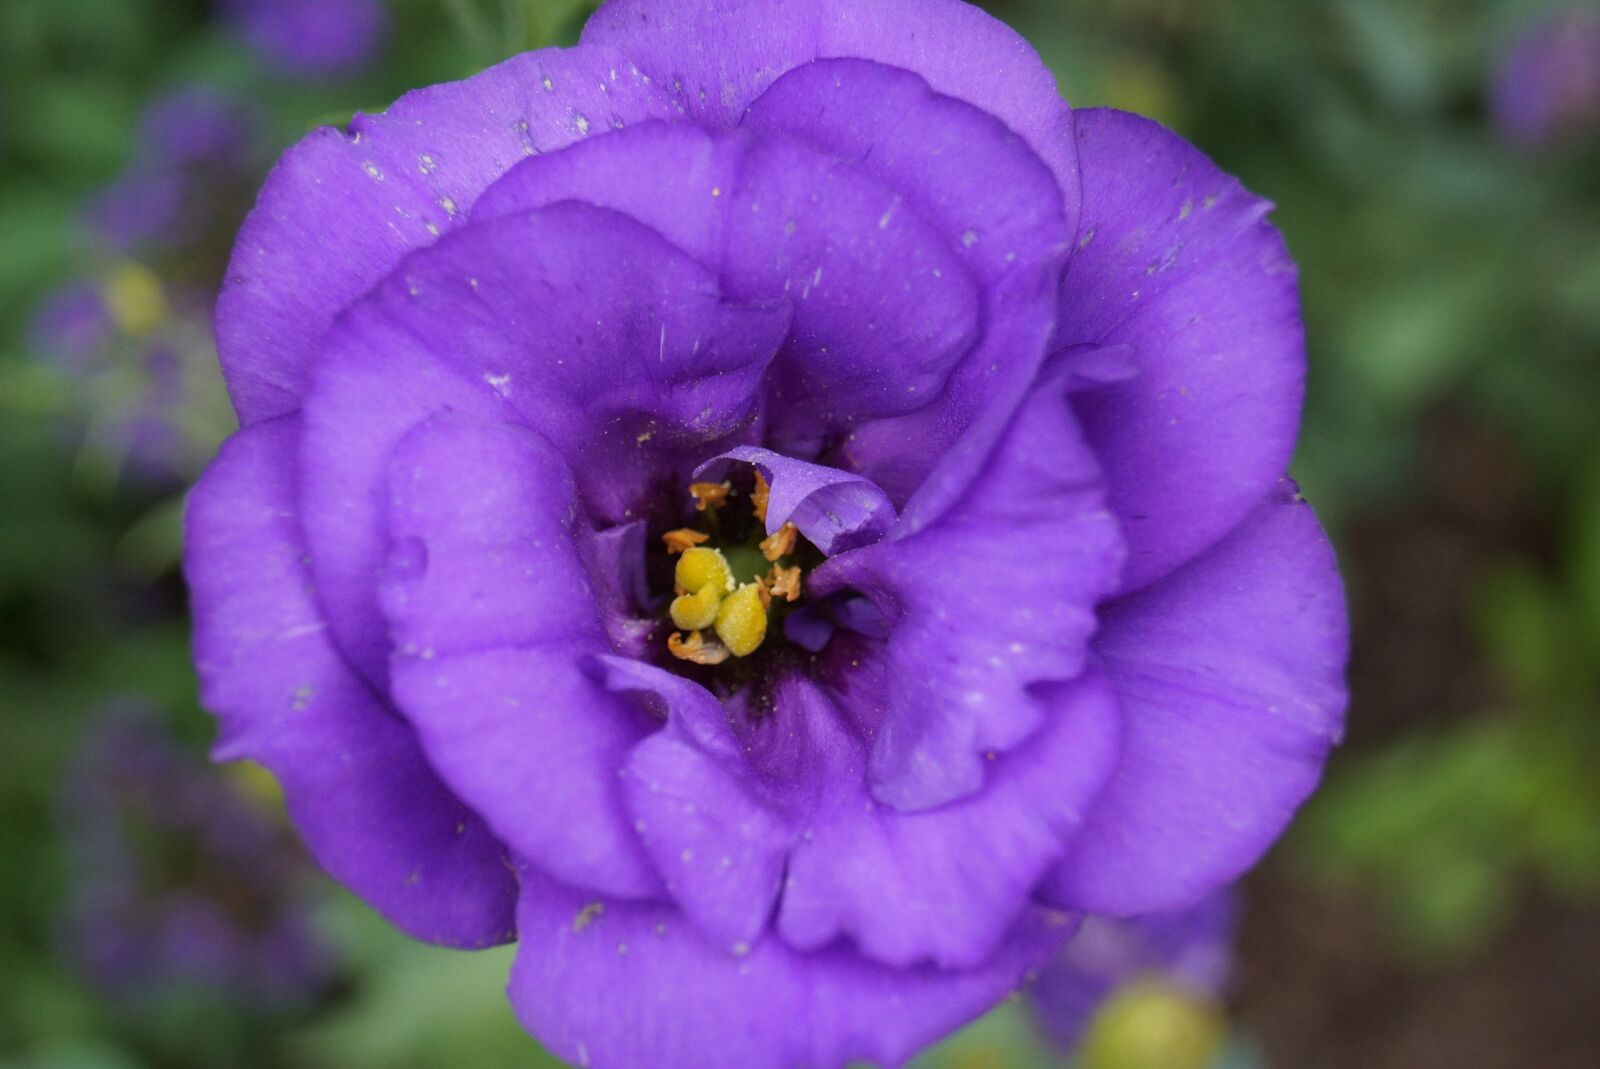 Sony SLT-A65 (SLT-A65V) sample photo. Flower, purple flowers, blossom photography